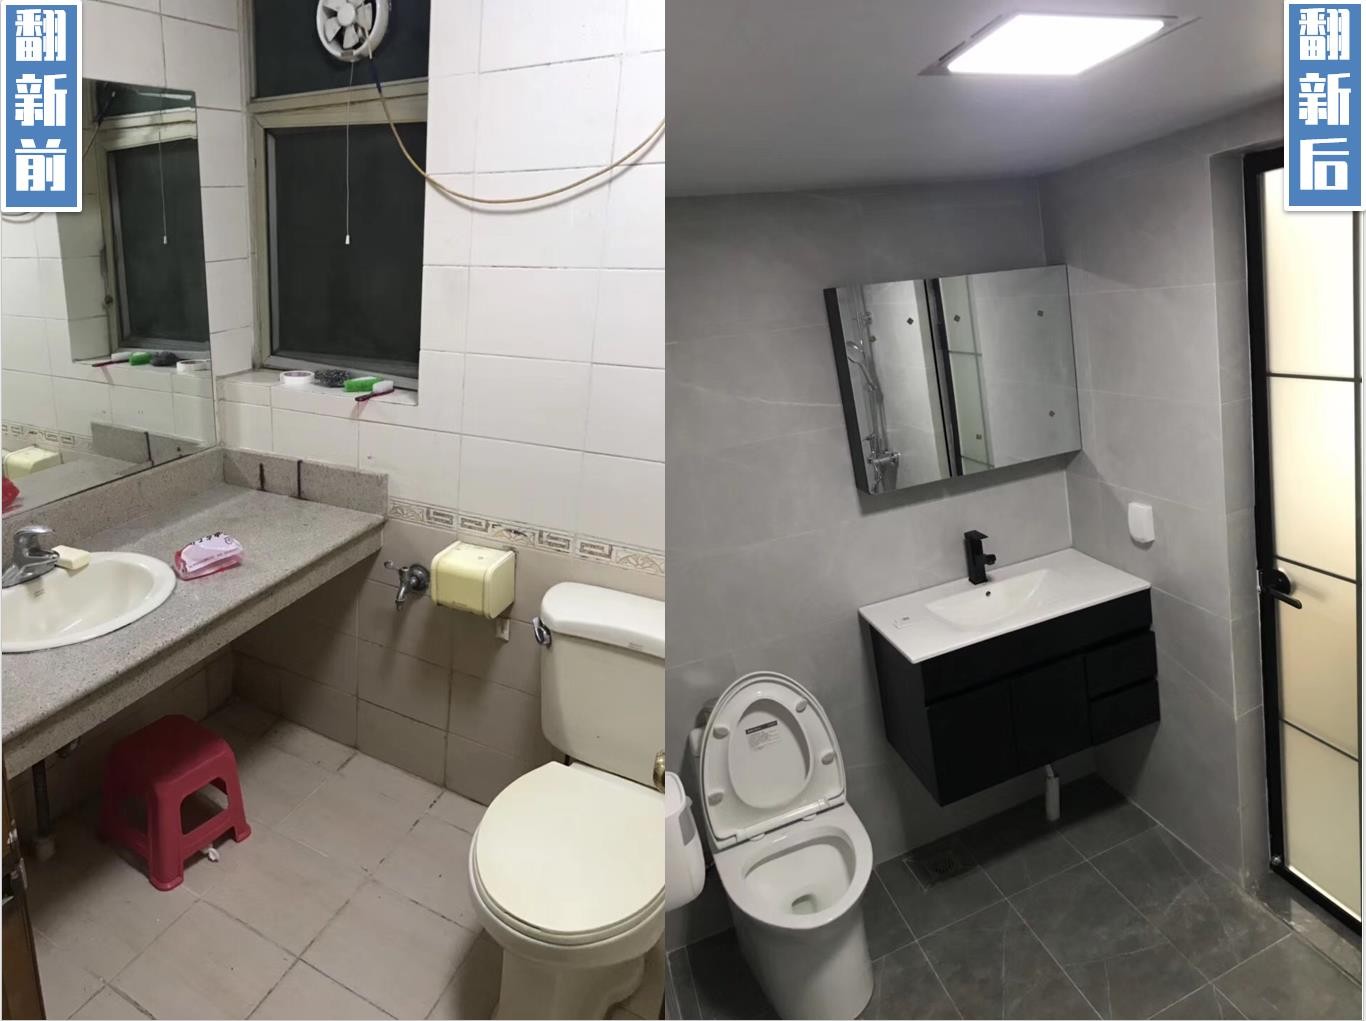 旧房翻新改造-洗手间厕所翻新 